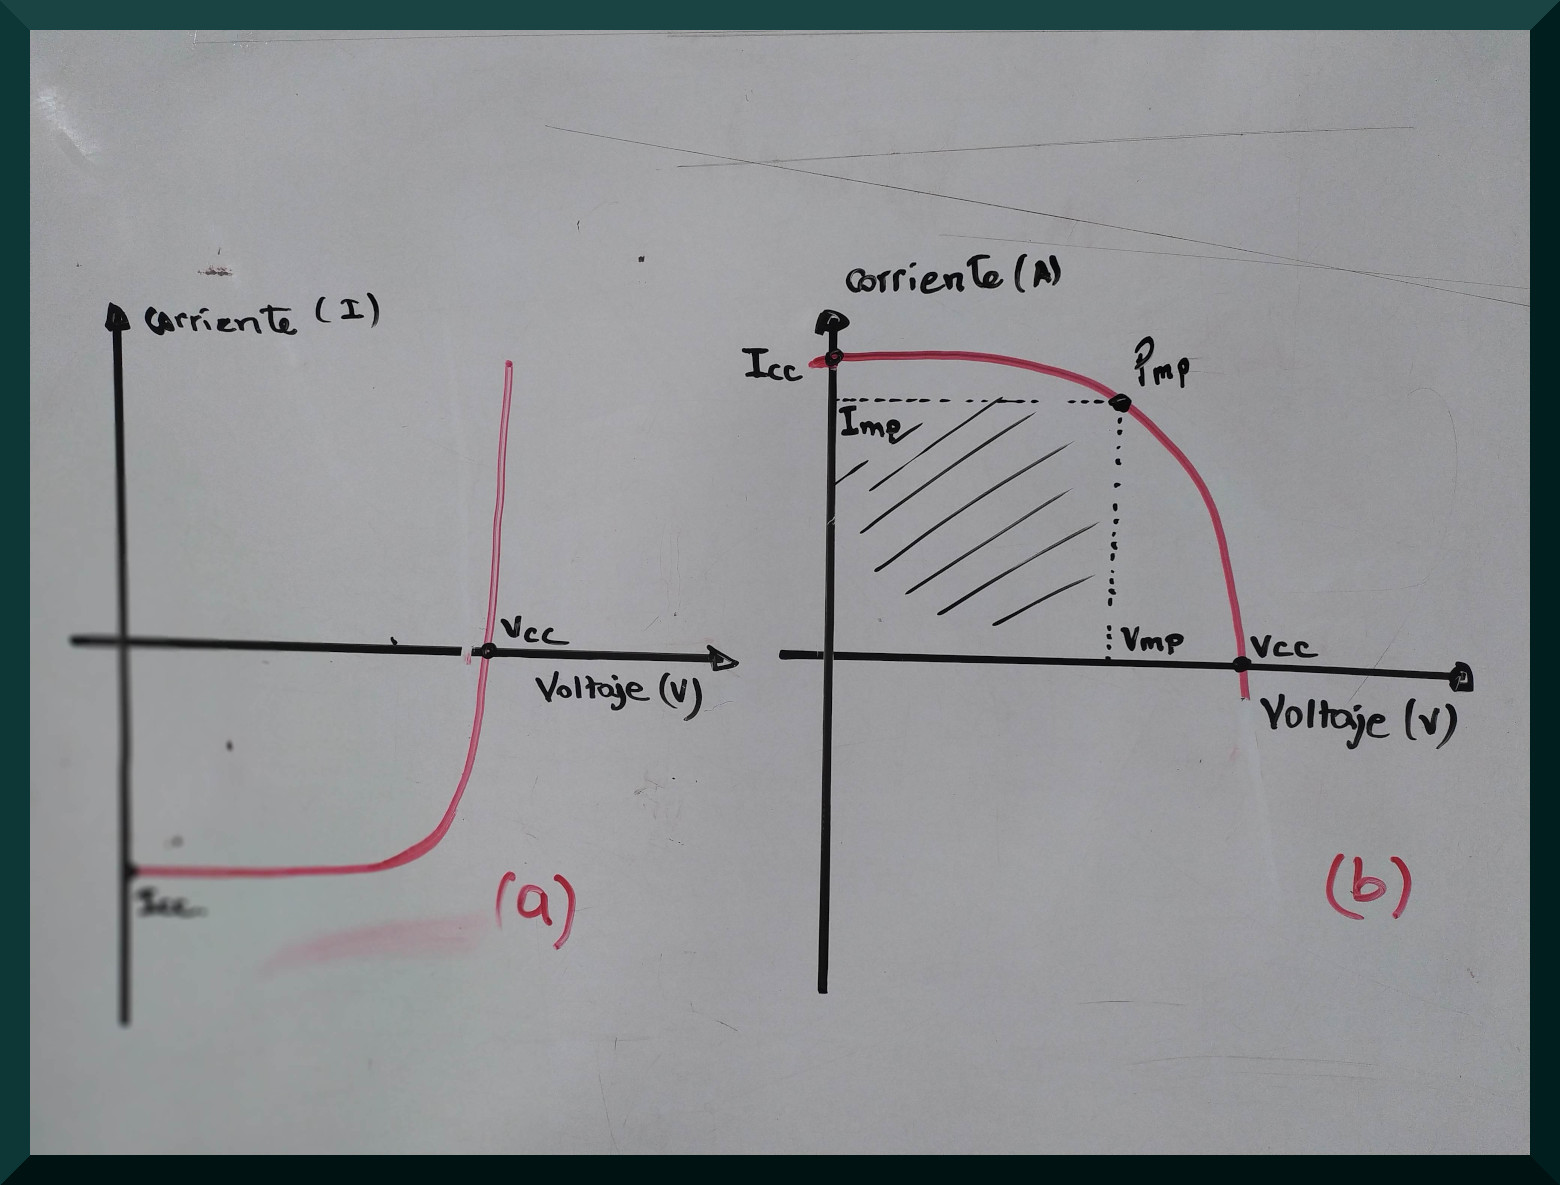 Representación del efecto fotovoltaico en la curva corriente-voltaje cuando está invertida el eje de corriente.